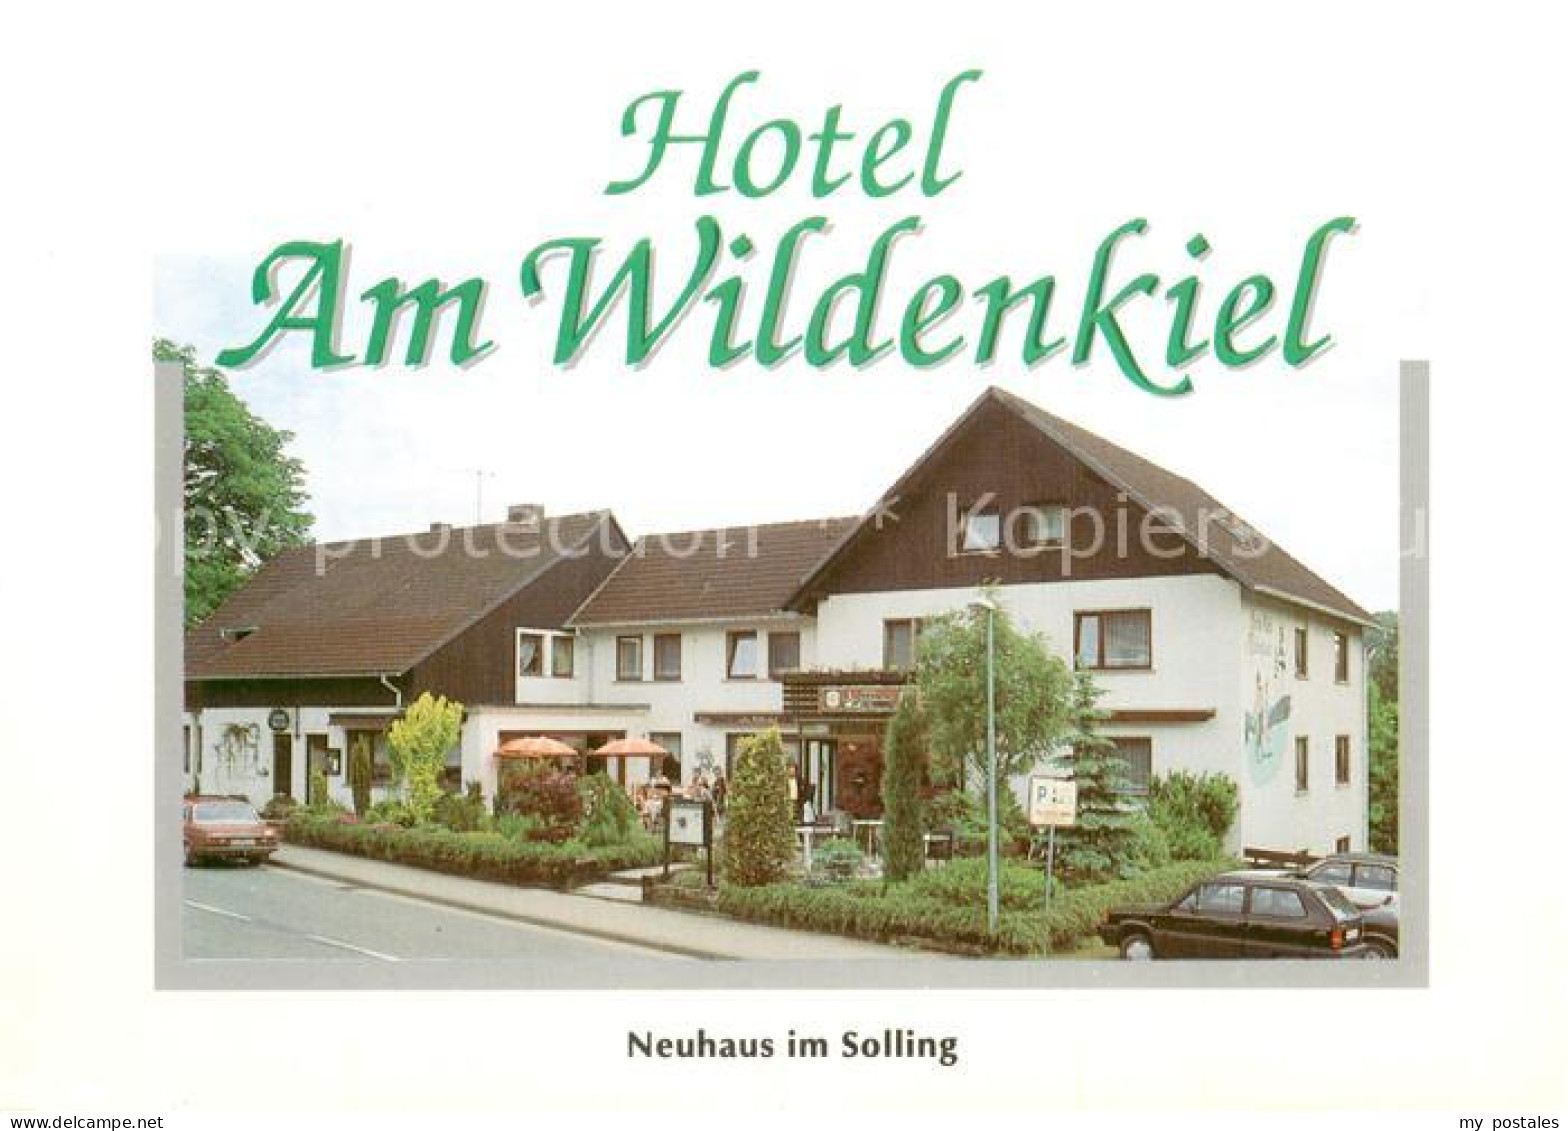 73746400 Holzminden Weser Hotel Am Wildenkiel Holzminden Weser - Holzminden